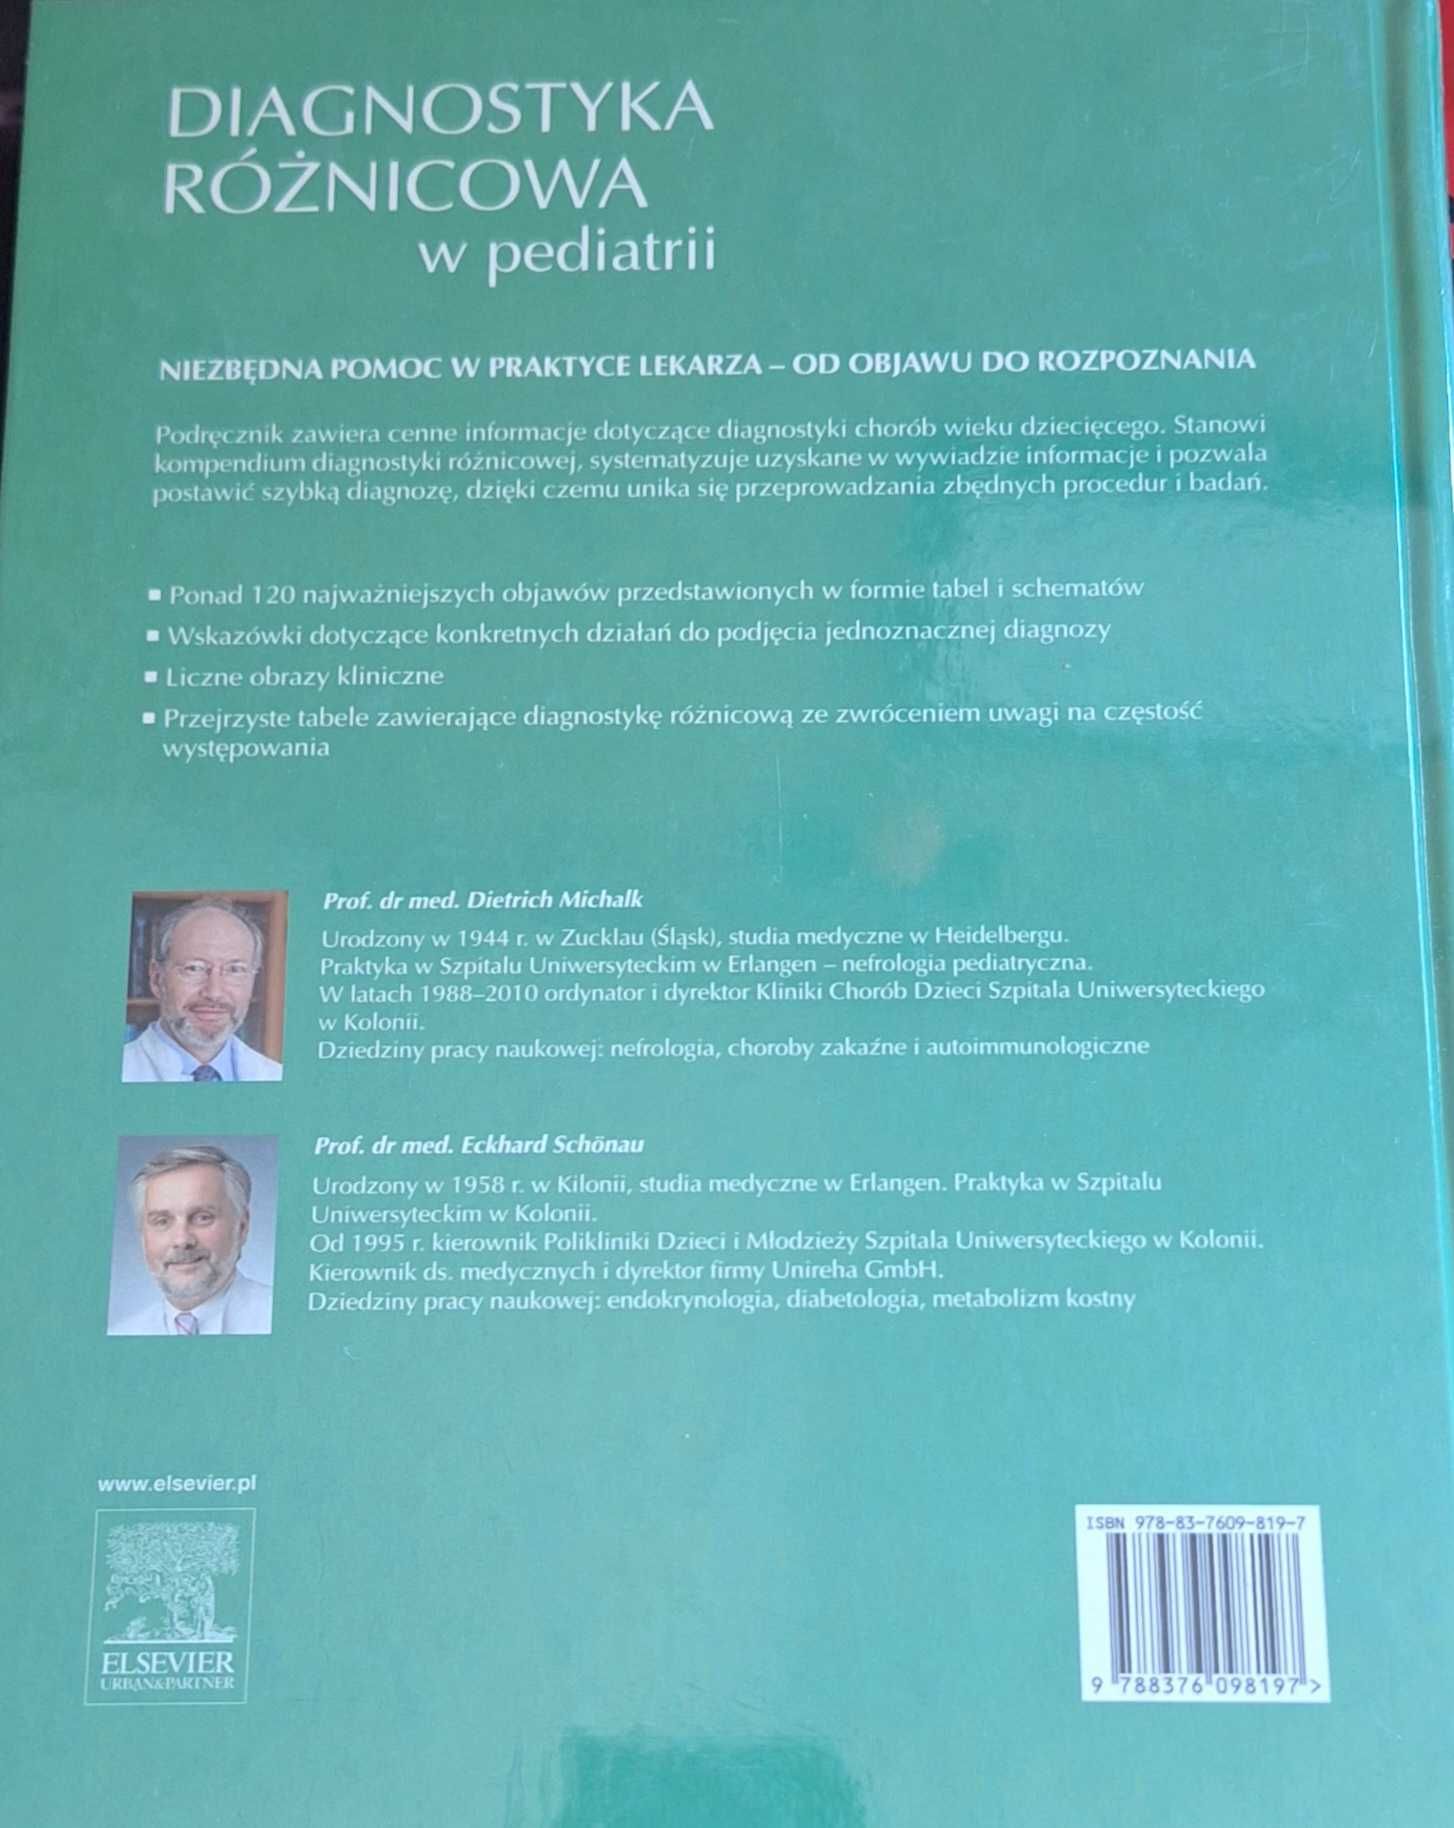 Diagnostyka Różnicowa w Pediatrii Michalk / Schonau - NOWA